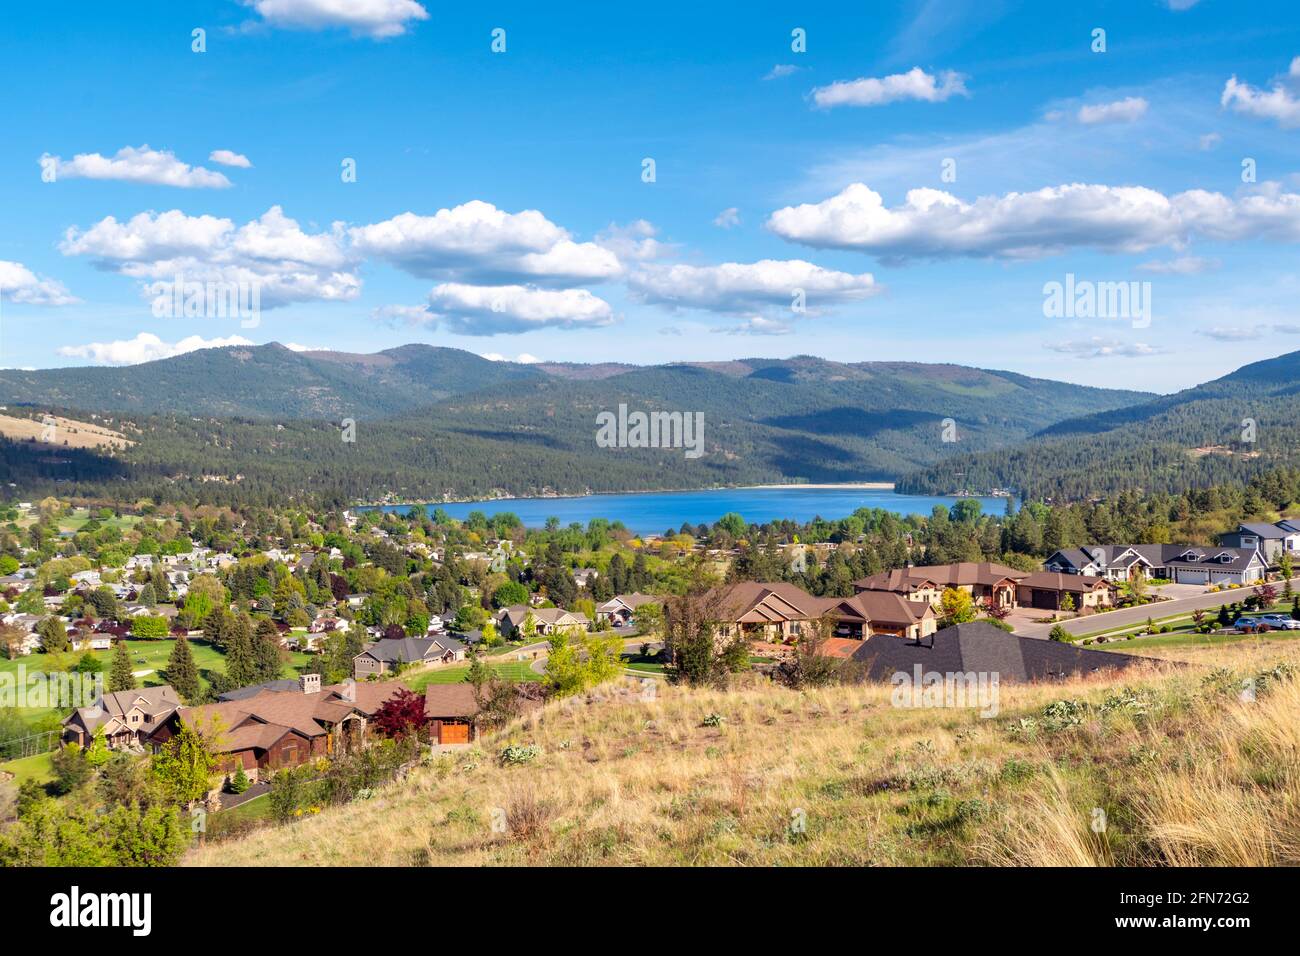 Vista desde una subdivisión de lujo del lago y la ciudad de Liberty Lake, Washington, un suburbio rural de Spokane, Washington, Estados Unidos Foto de stock